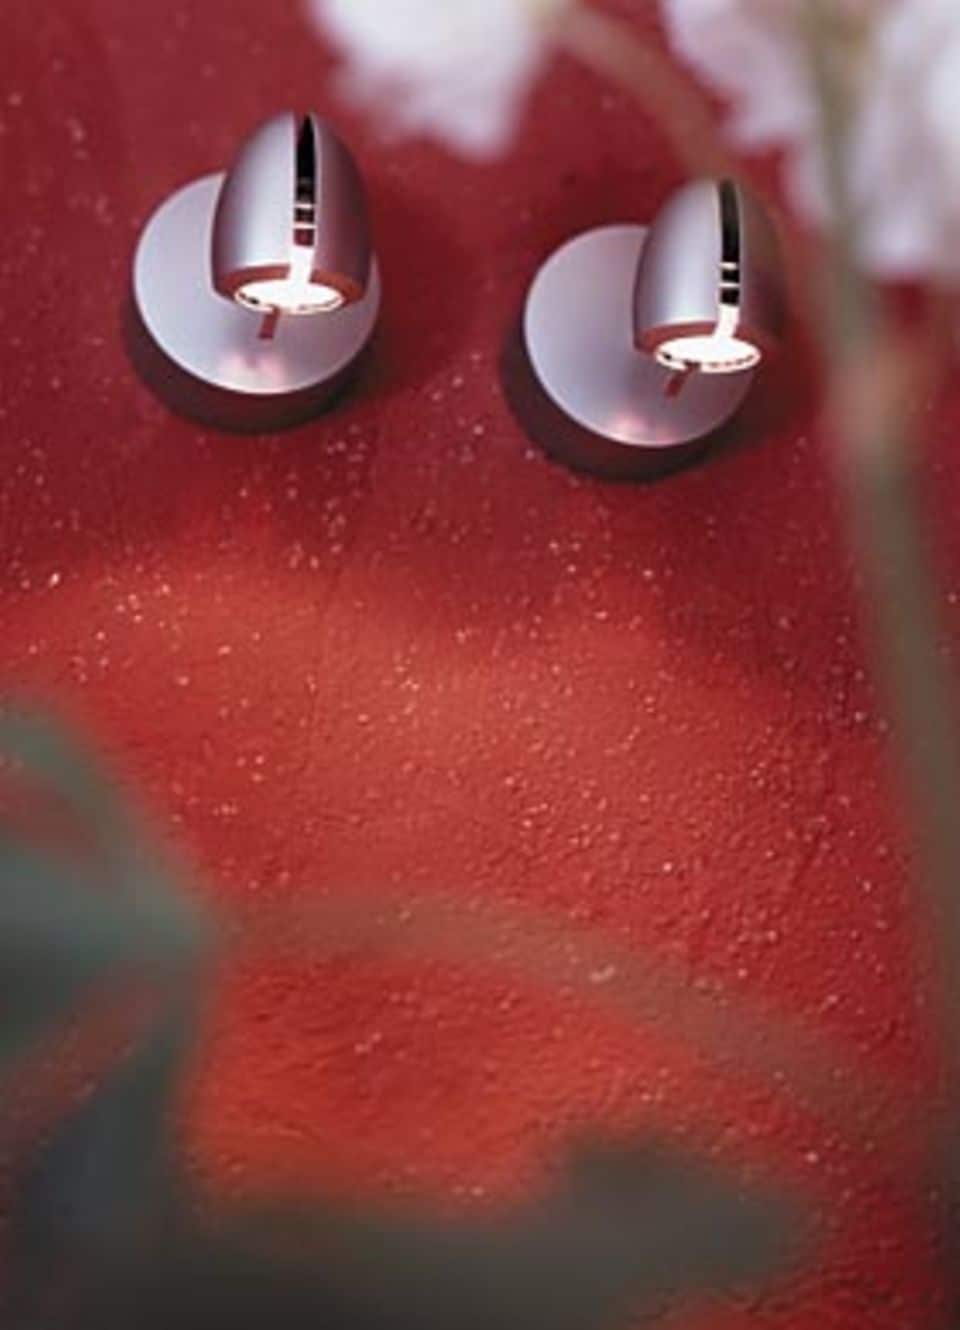 Die "Monospots" von Tobias Grau sitzen auf dem ziegelroten Putz, den es mit fertig angemischter Farbpigmentierung von Terrastone gibt (auch in anderen Farben). Tobias Grau Internet: www.tobias-grau.com Fon 04101-370-0 Fax 04101-370-1000